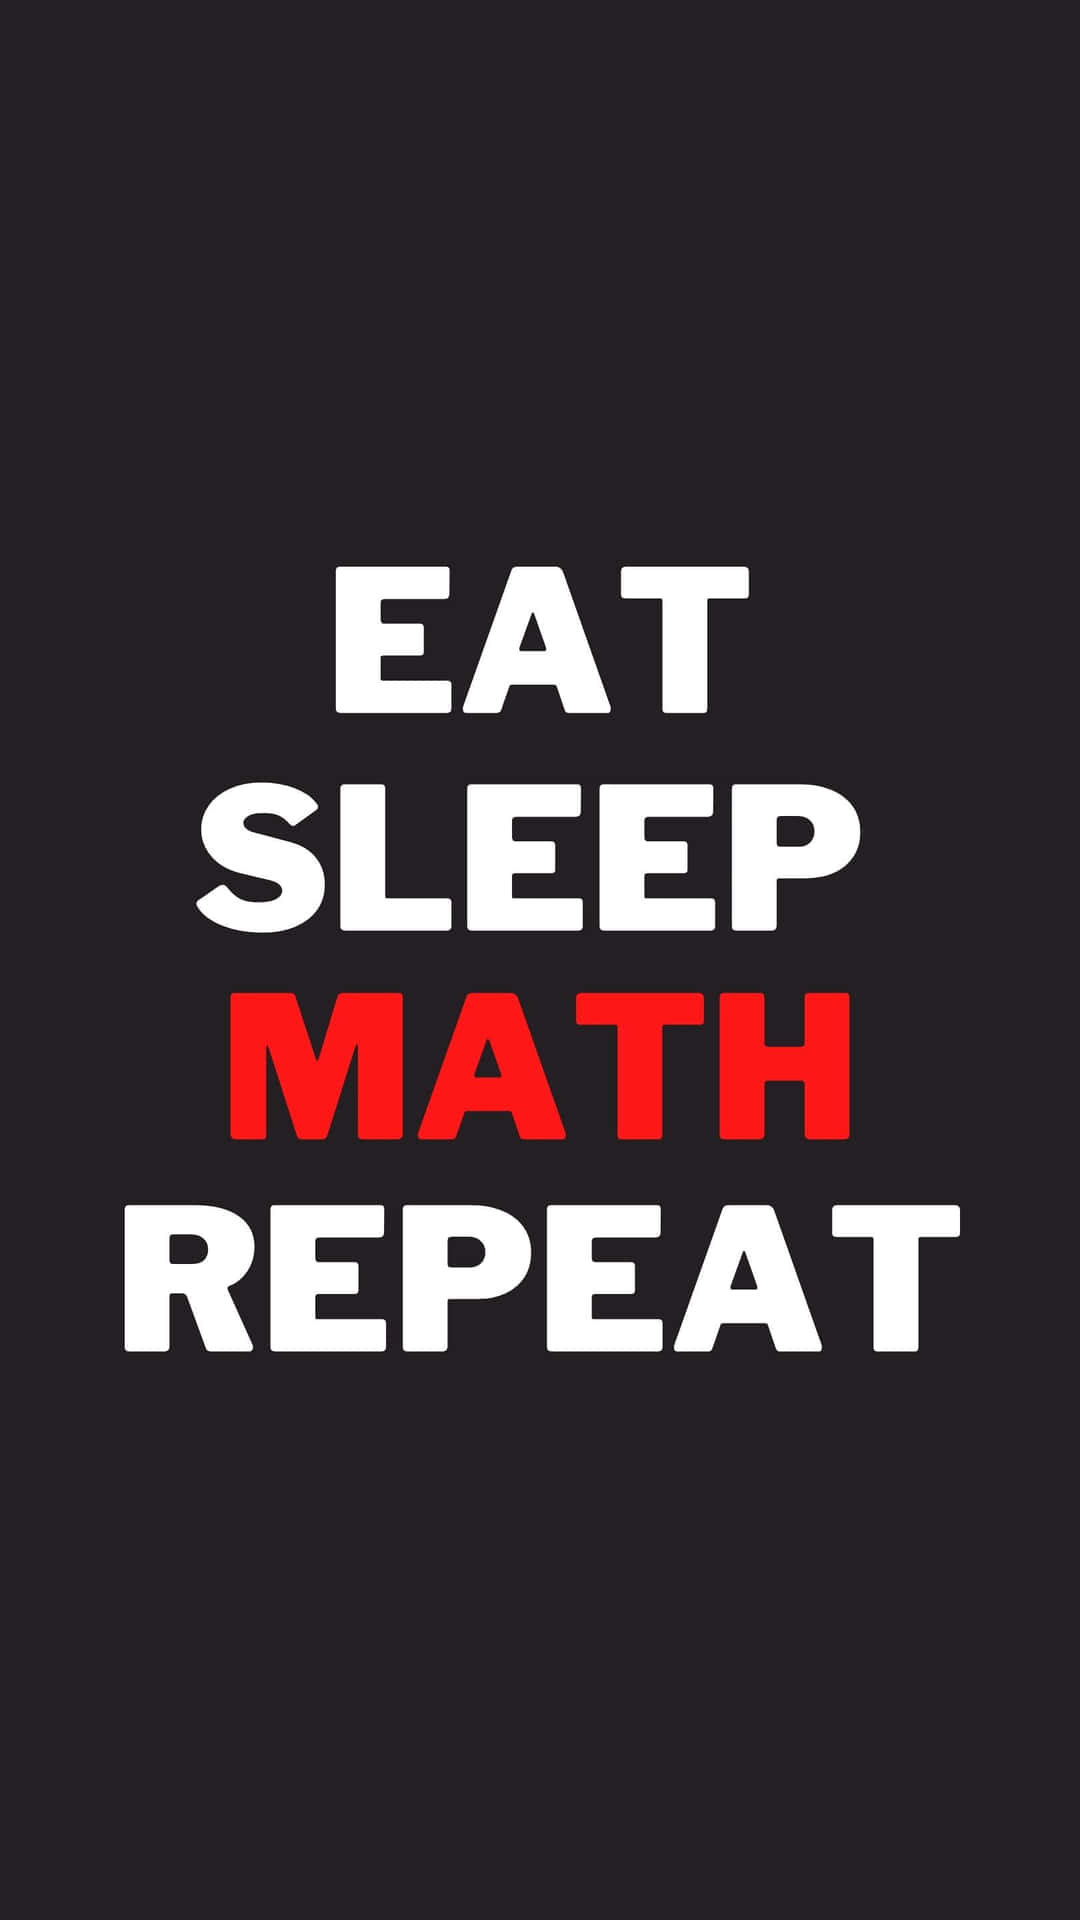 Eat Sleep Math Repeat - Eat Sleep Math Repeat